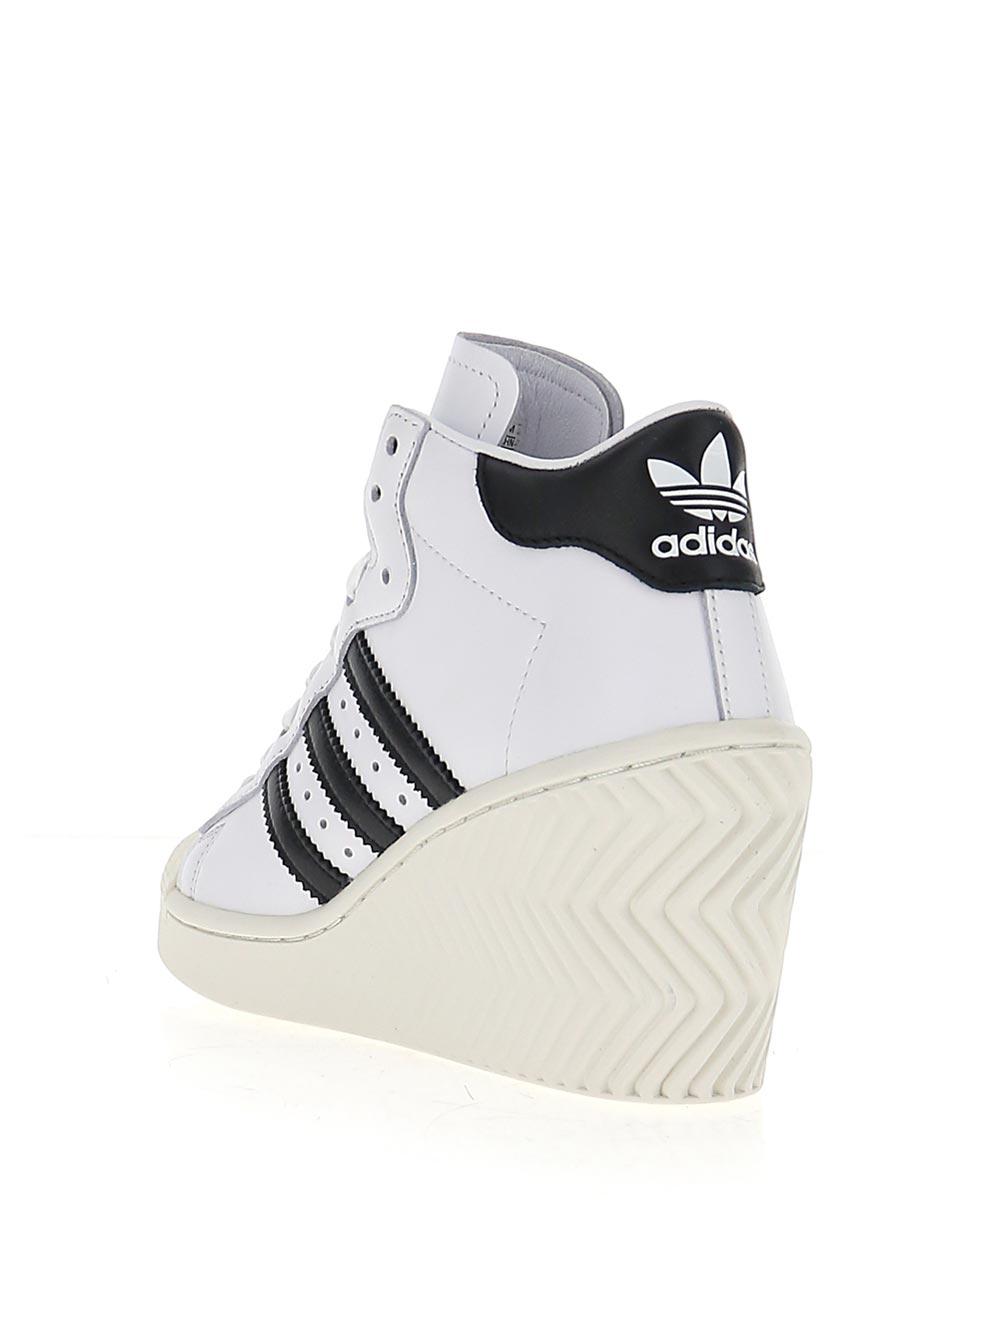 krater ramp Uitdrukkelijk adidas Originals Superstar Ellure Wedged Sneakers in White | Lyst